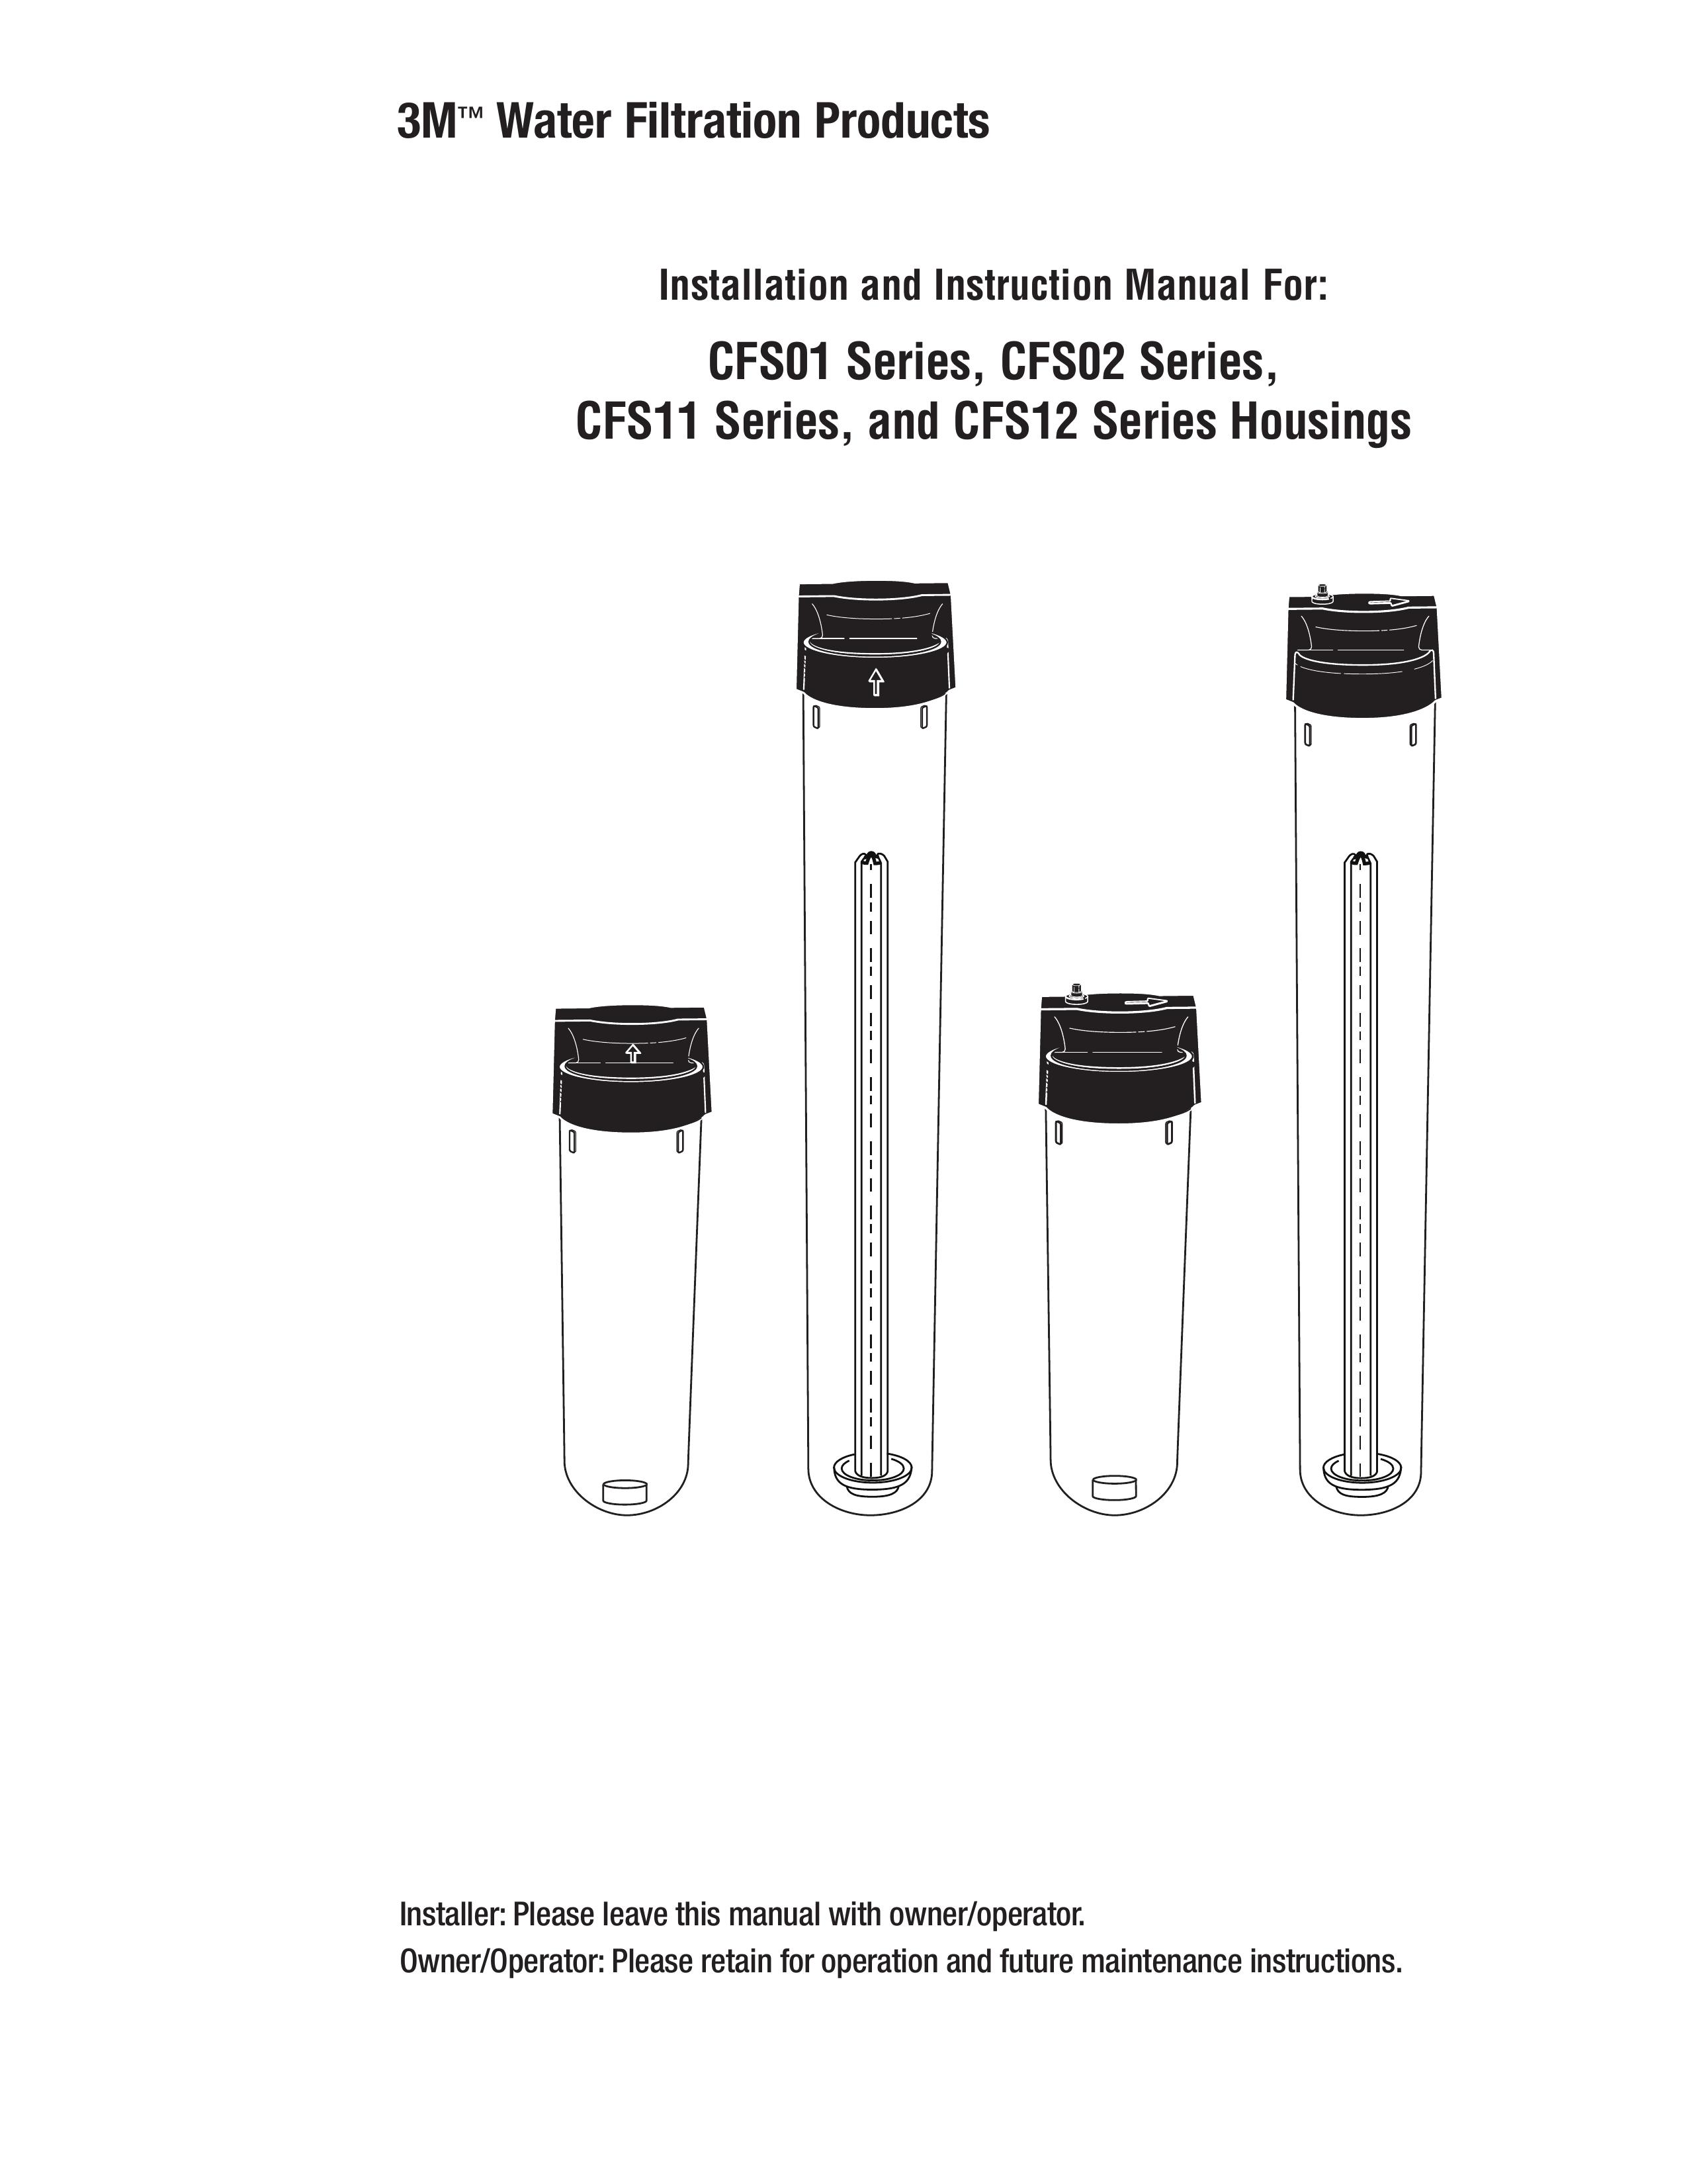 3M CFS02 Water Dispenser User Manual